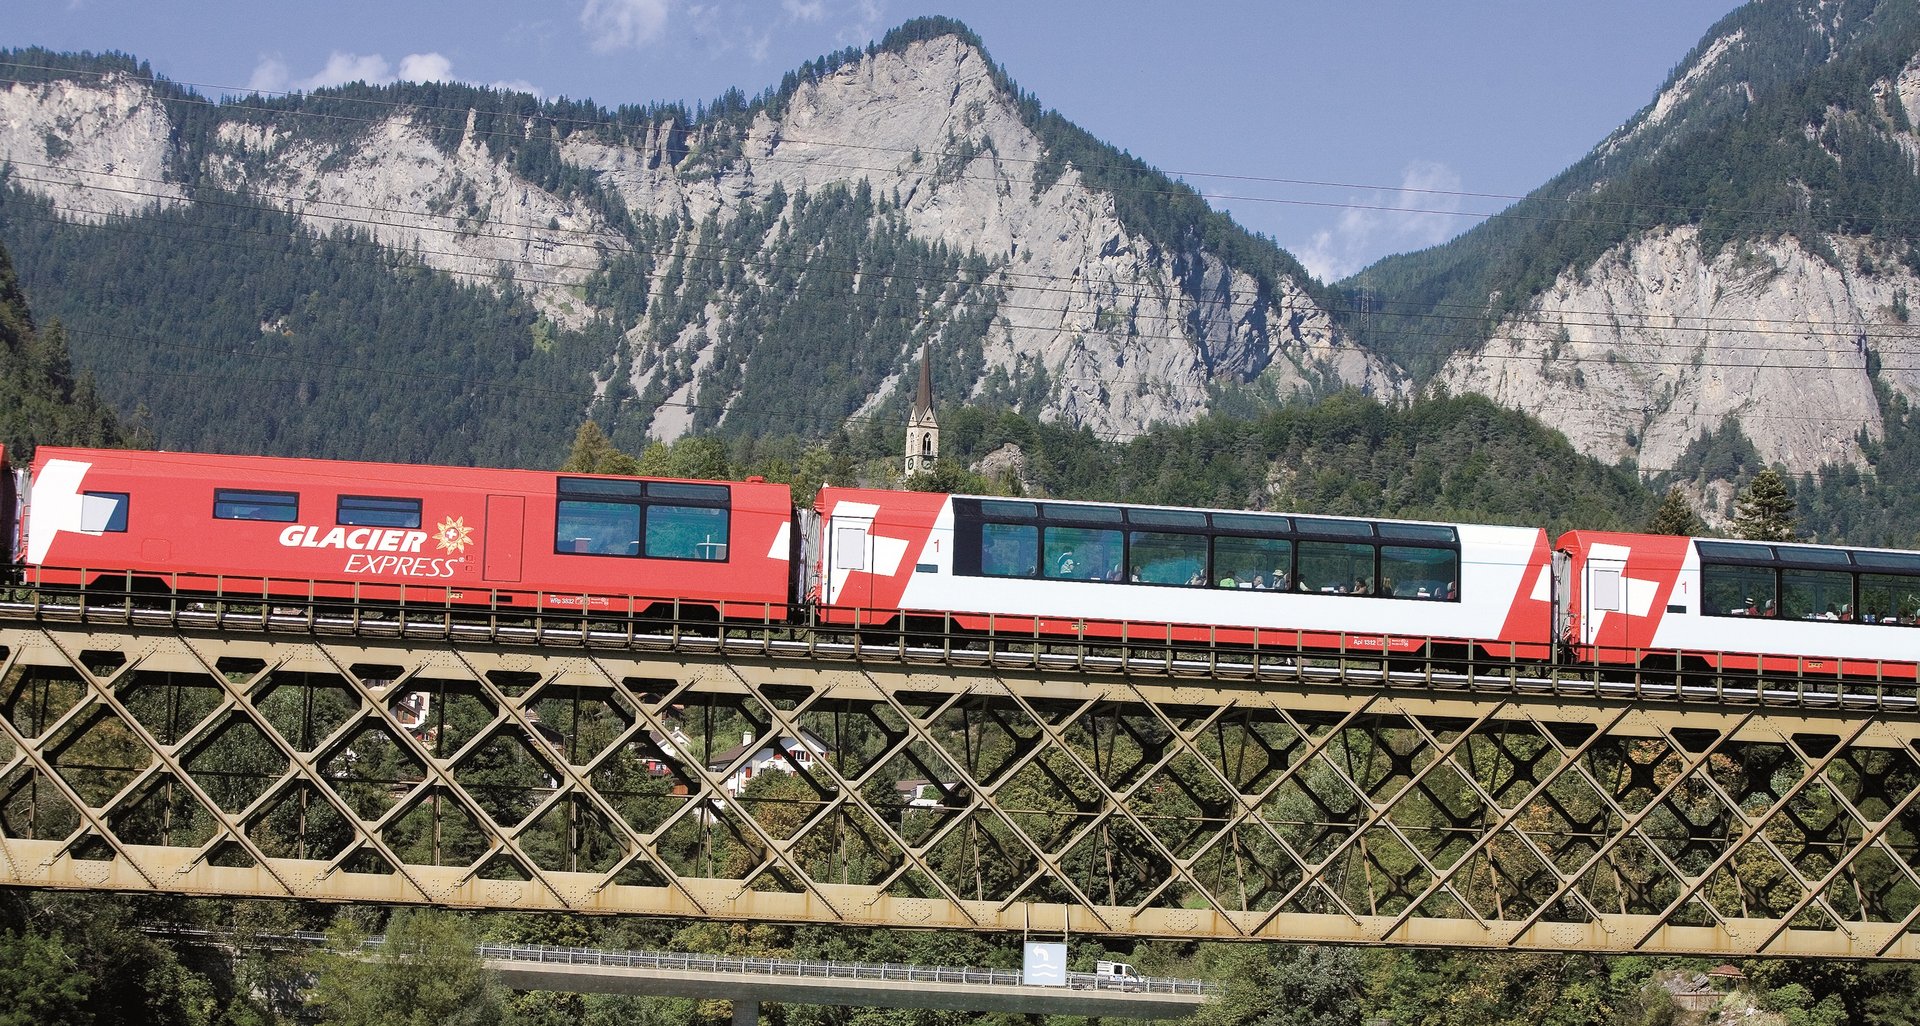 Glacier Express, Sommer, Rheinbr�cke, Vorderrhein, Hinterrhein